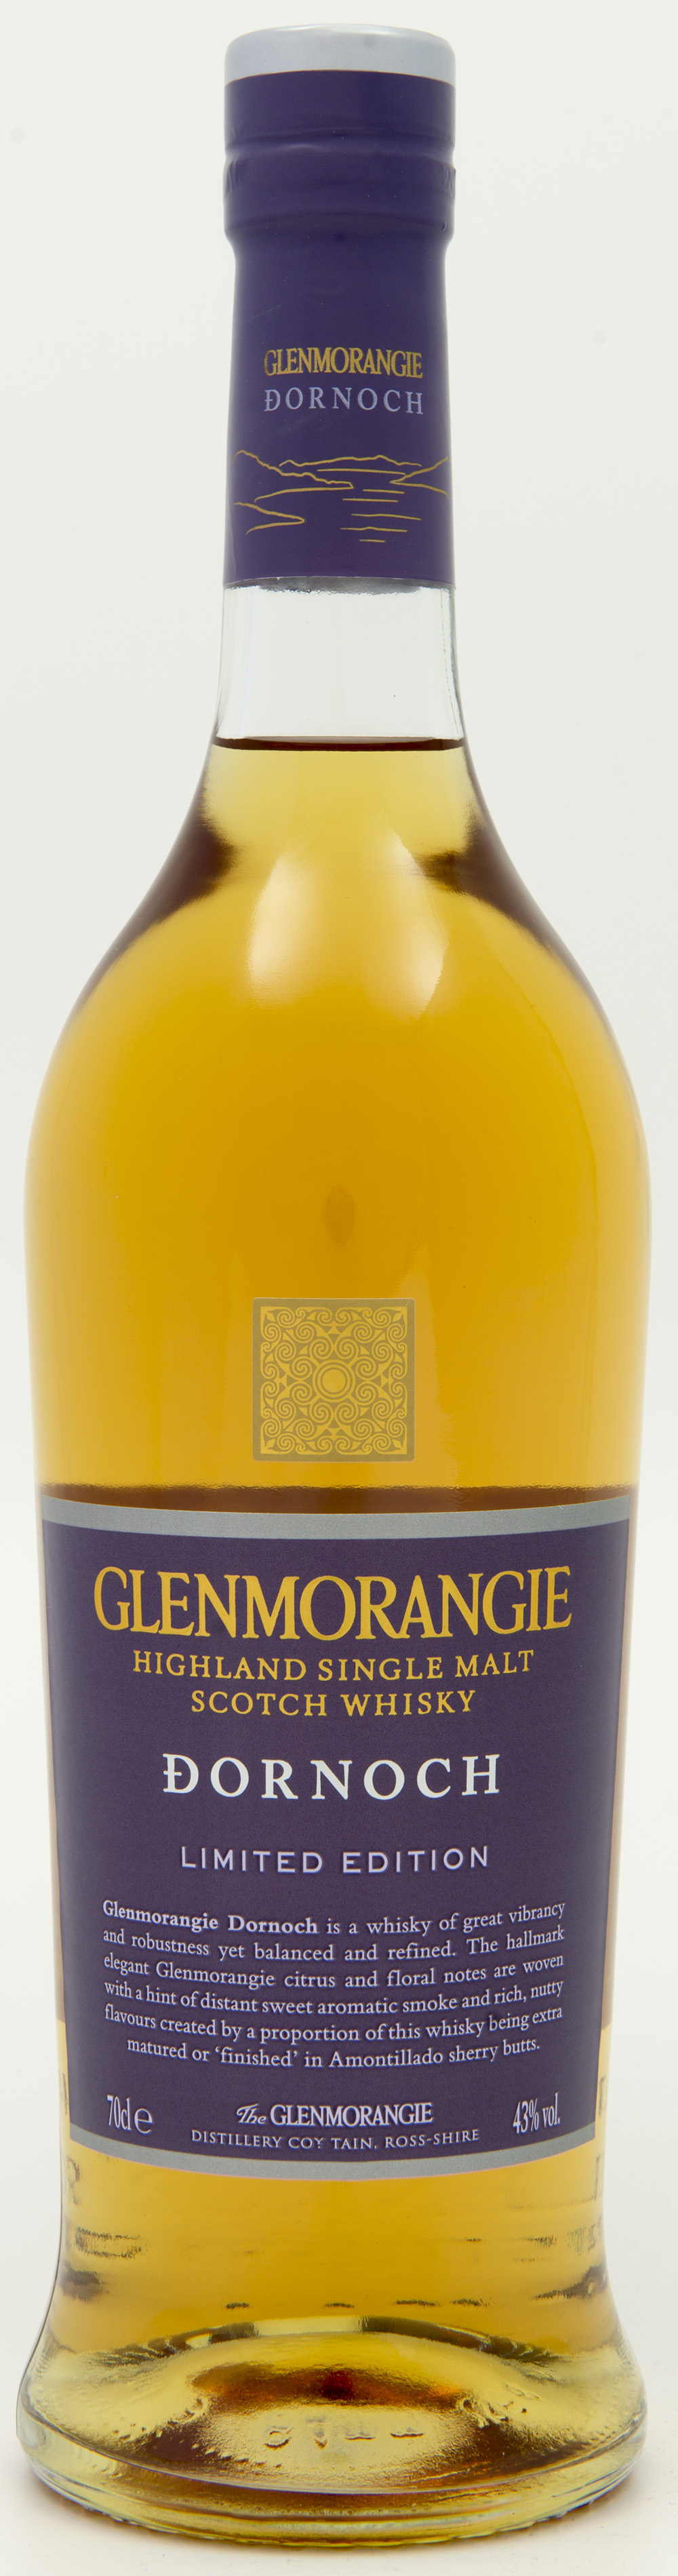 Billede: DSC_8189 - Glenmorangie Dornoch - bottle front.jpg